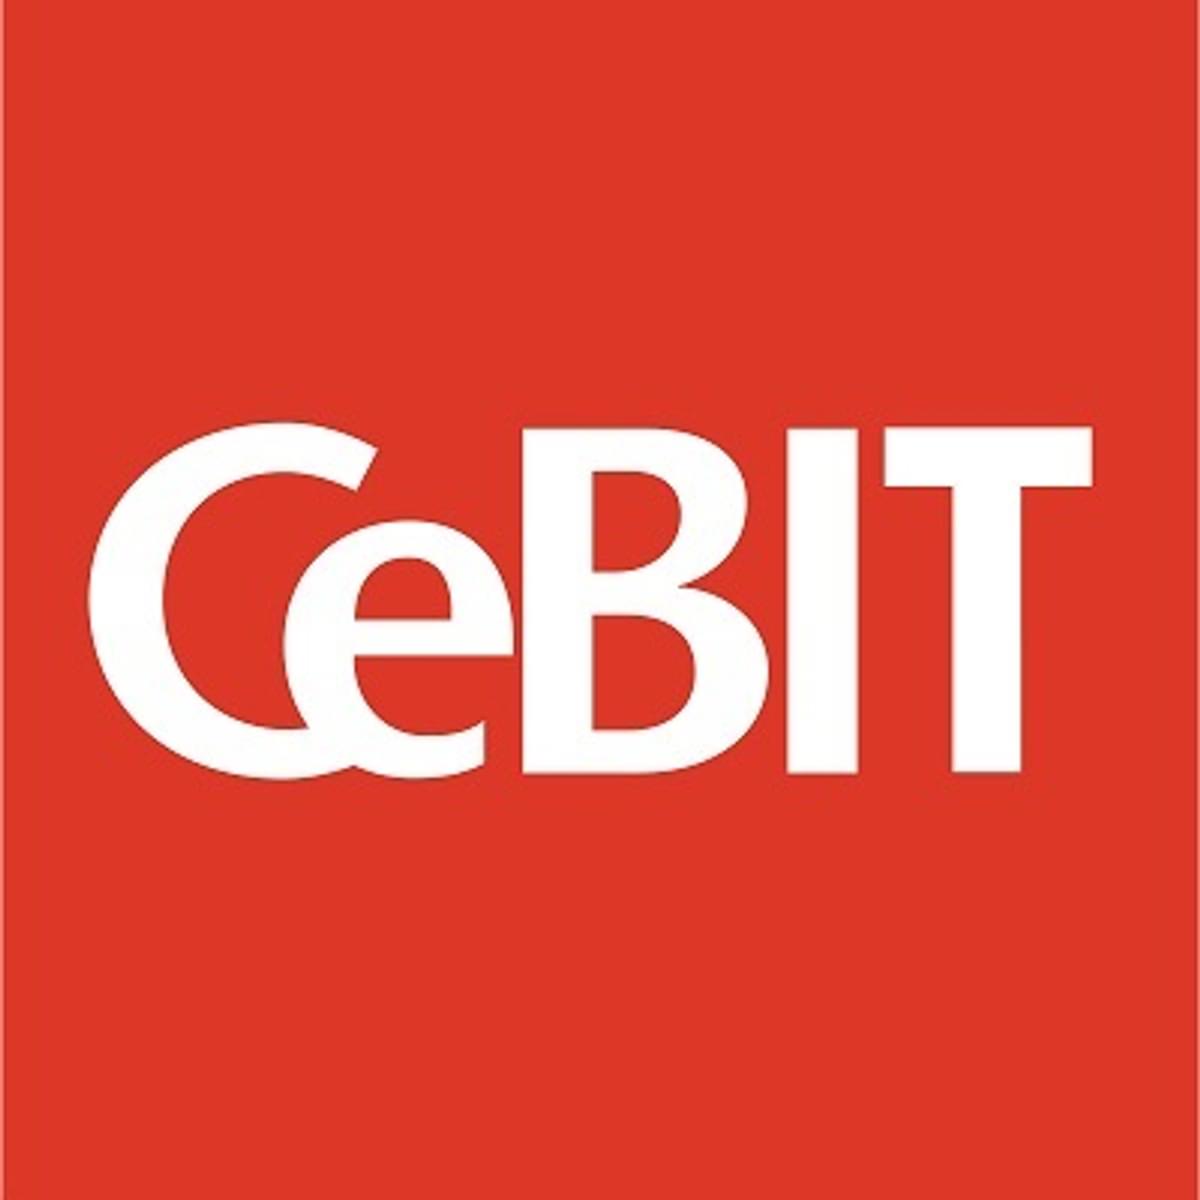 CeBIT 2017 image